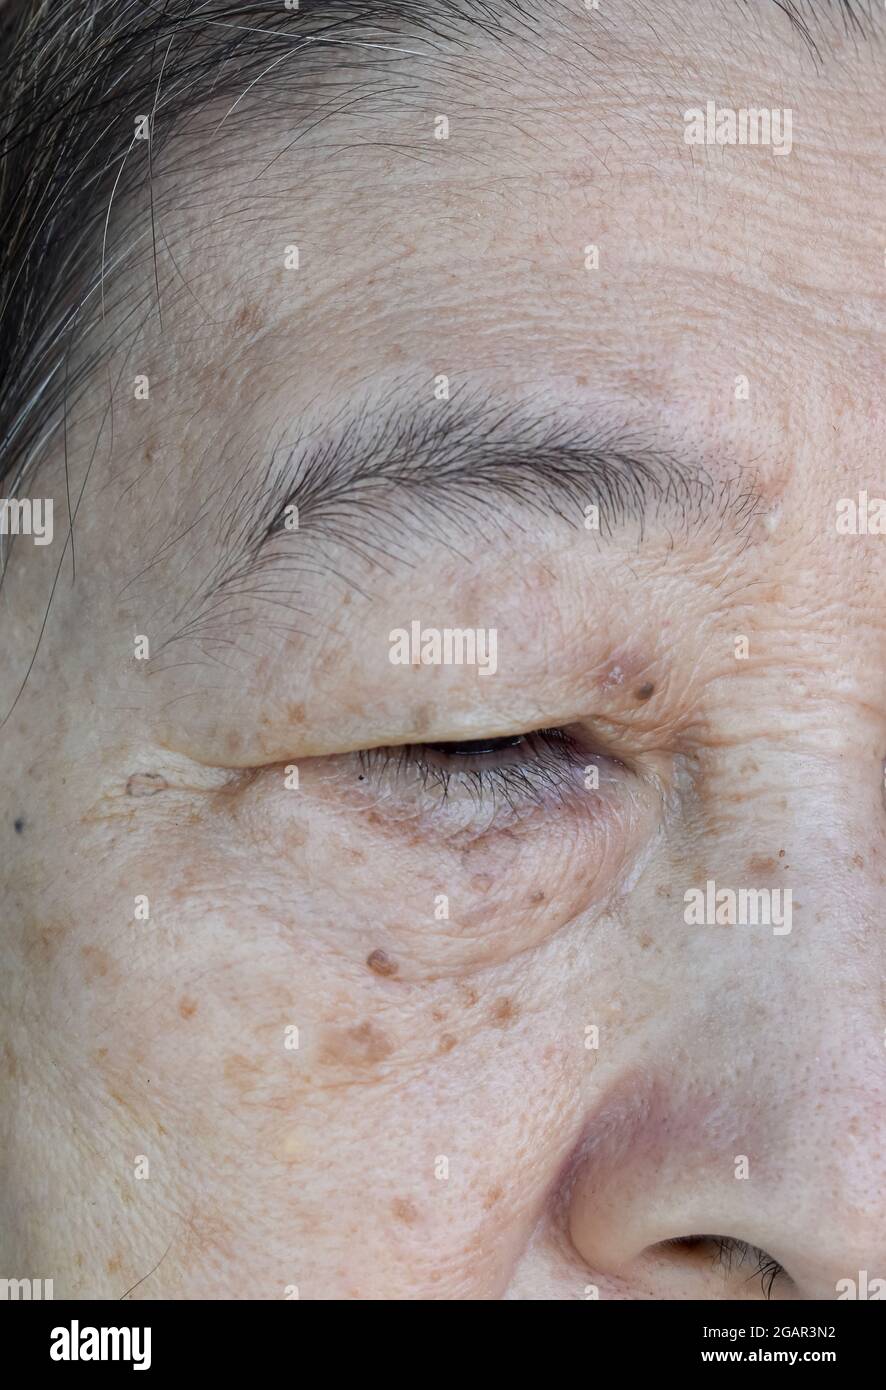 Alternde Hautfalten oder Hautfalten oder Falten und Alterungspunkte im Gesicht, insbesondere um das Auge einer älteren südostasiatischen, chinesischen Frau. Nahaufnahme. Stockfoto